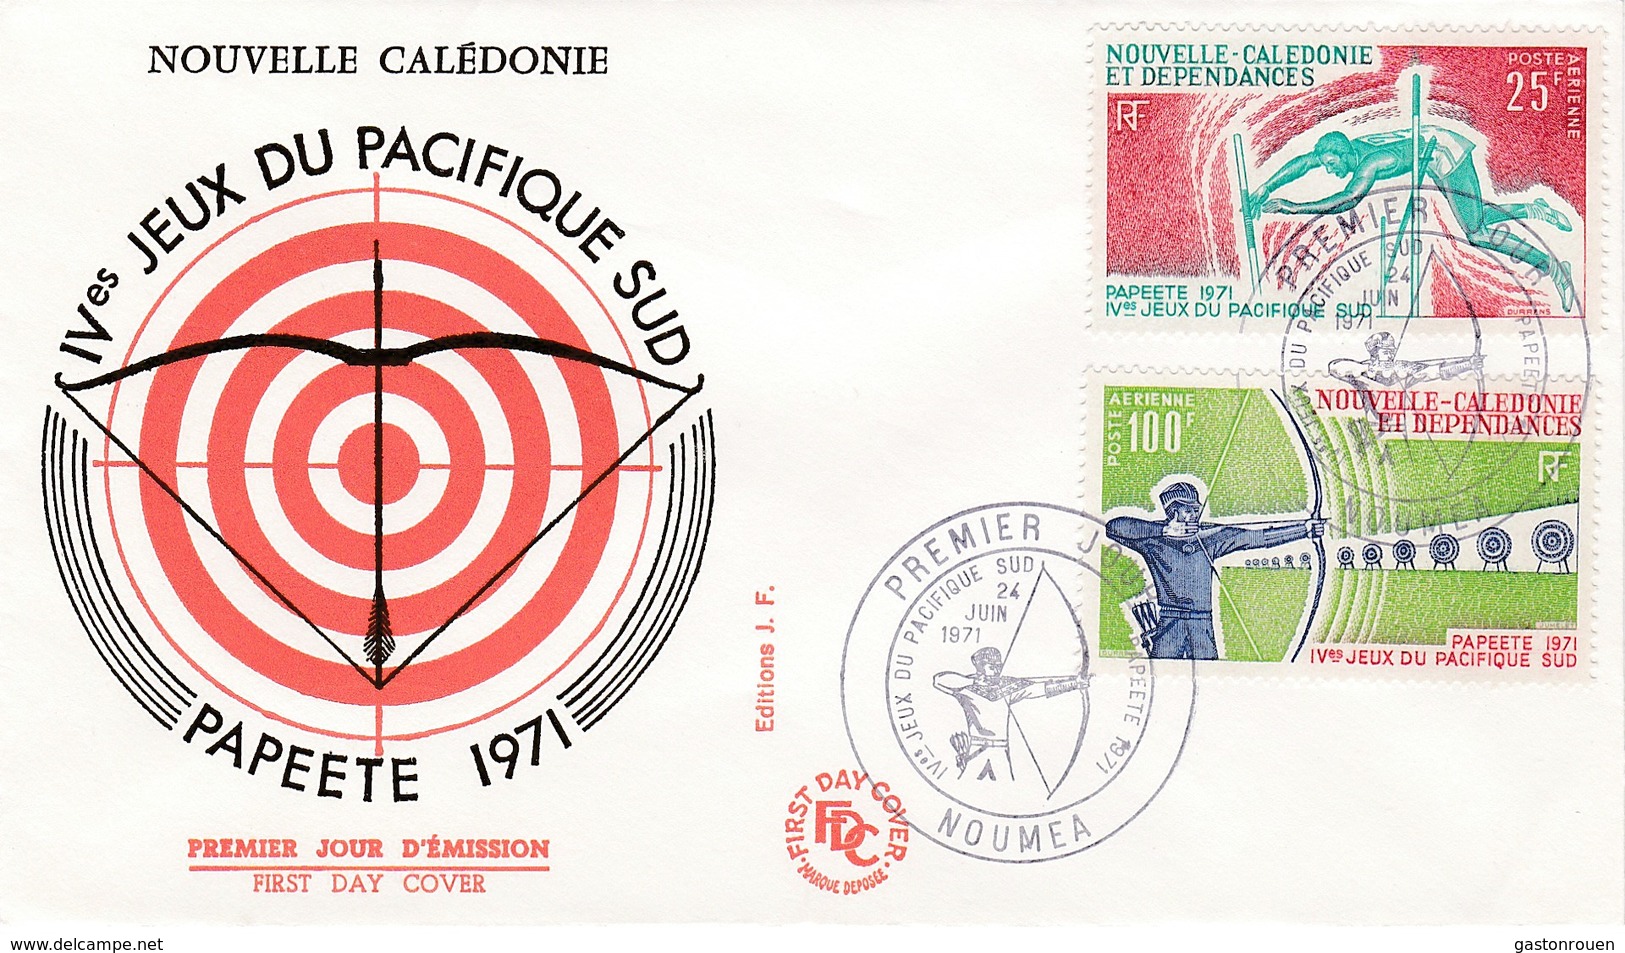 FDC PREMIER JOUR PA122 123 IVemes Jeux Pacifique Sud 24-06-1971 Nouvelle-Calédonie - FDC